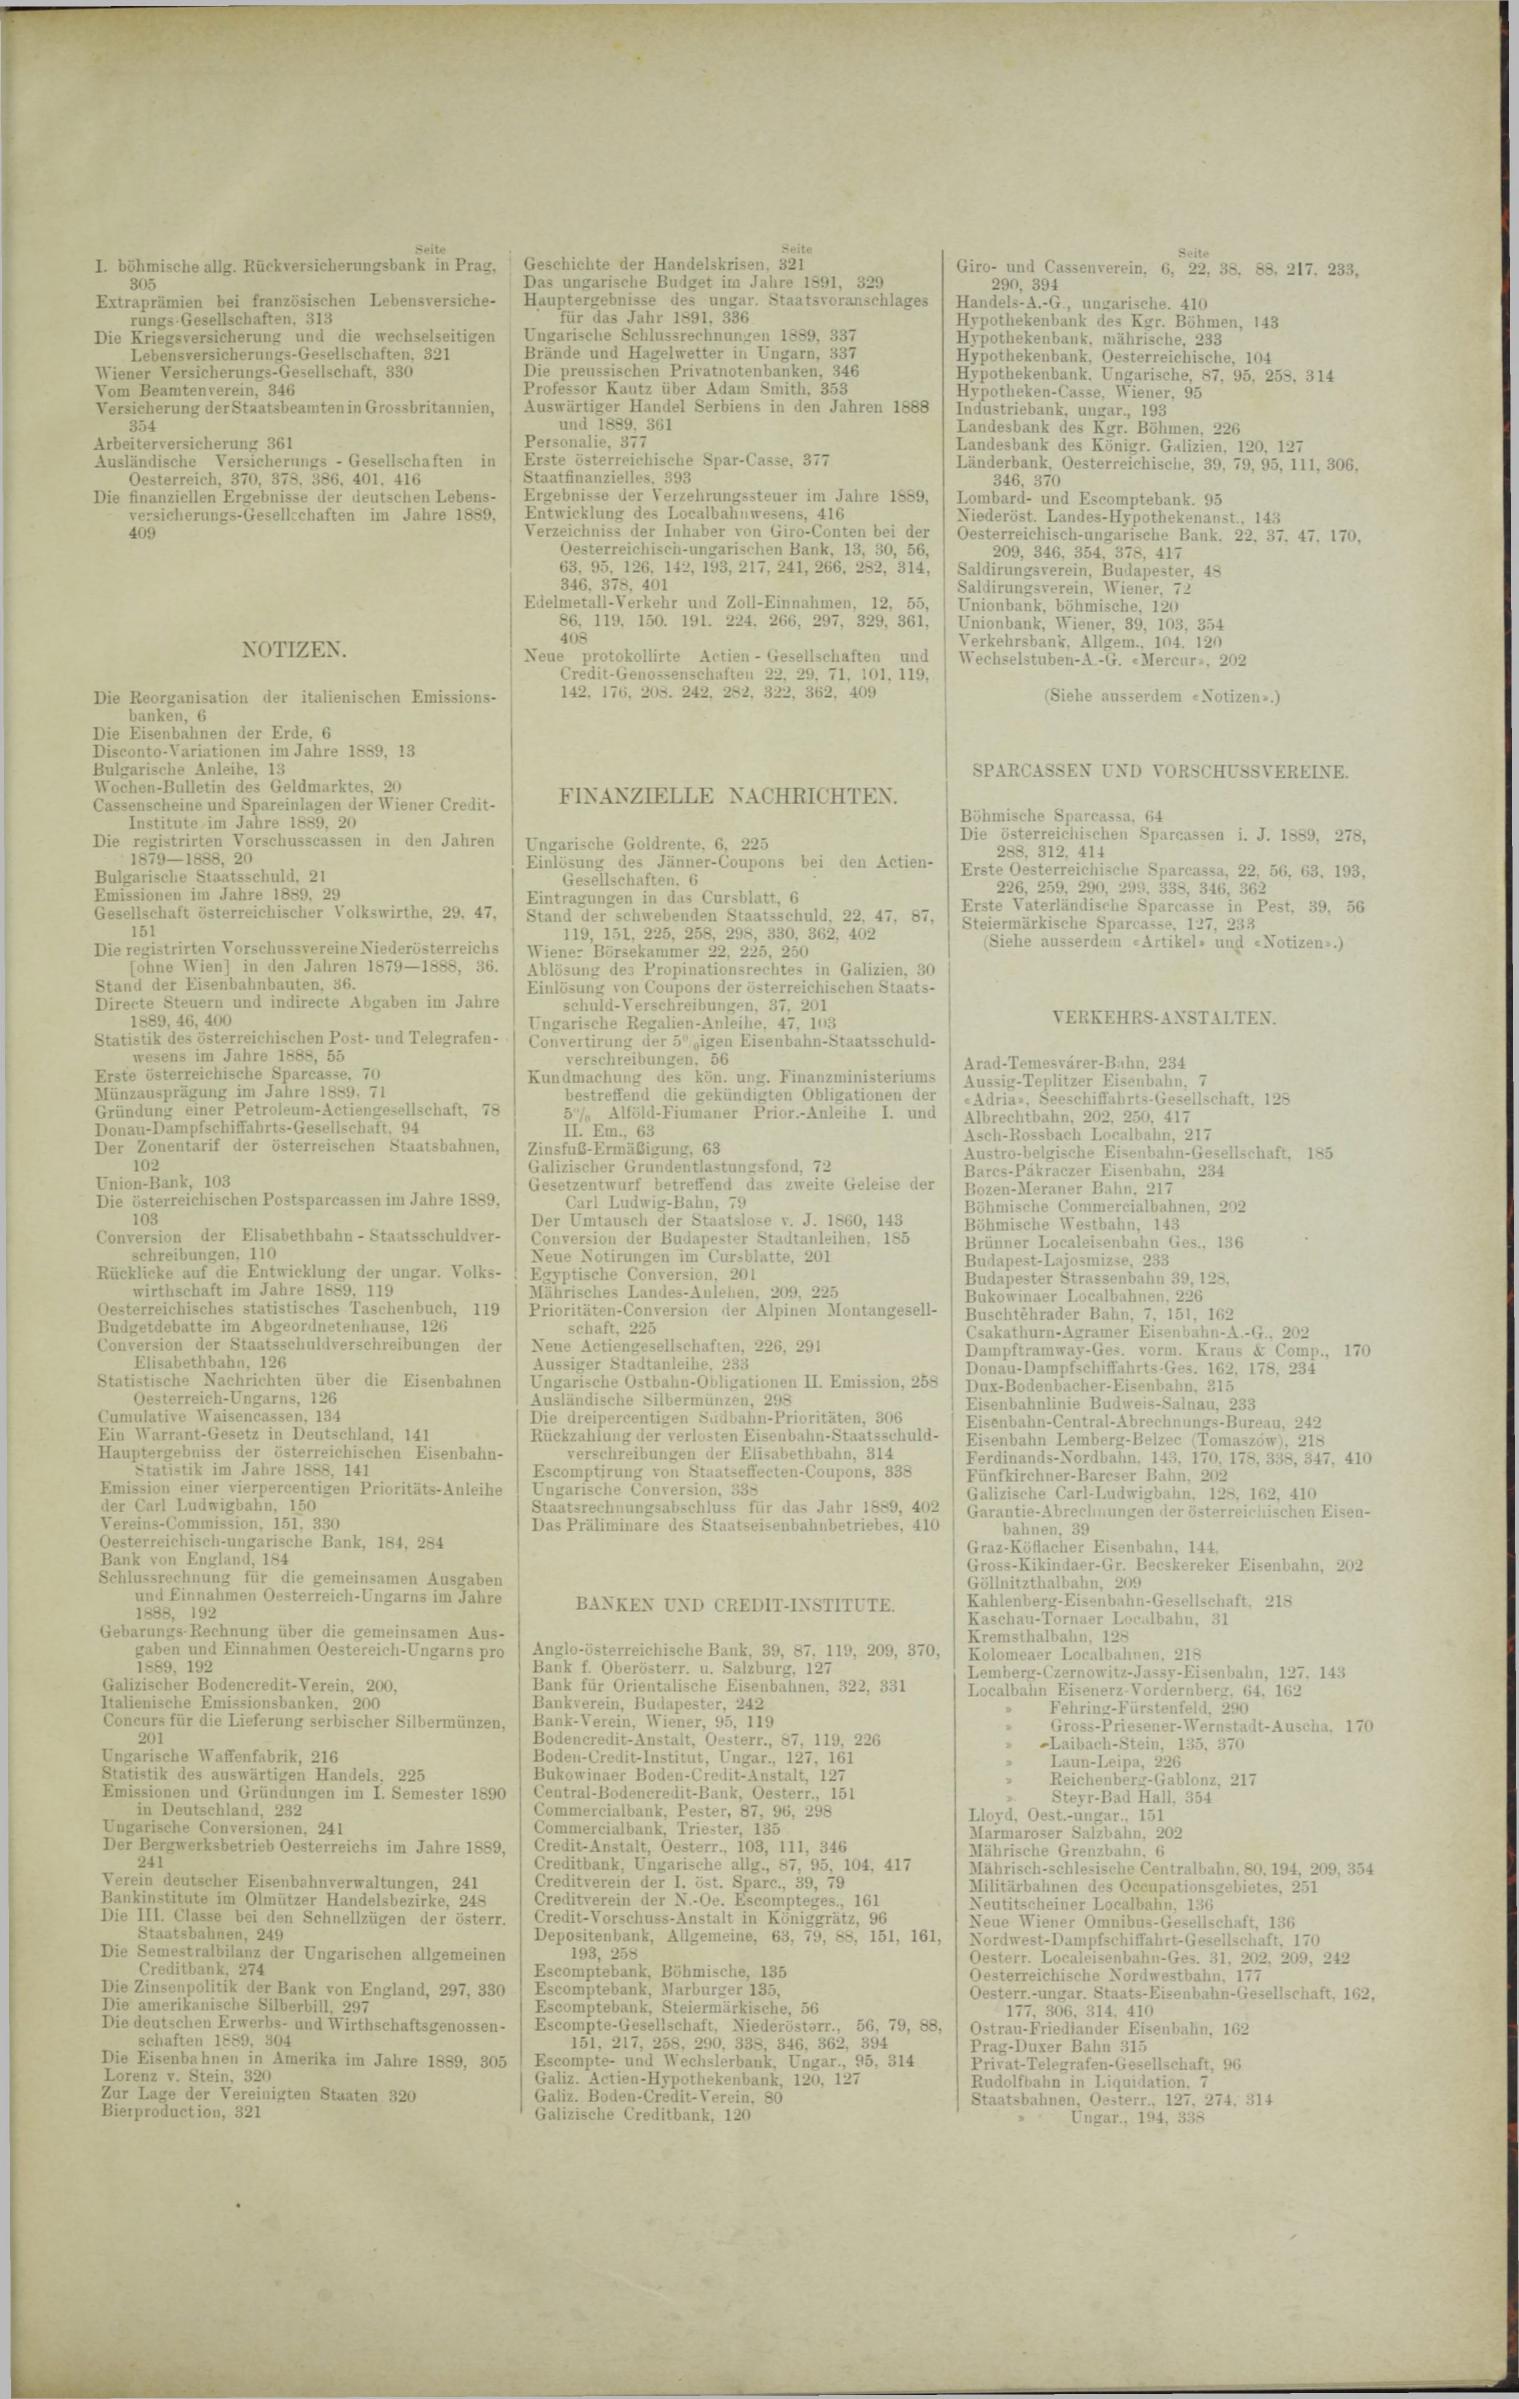 Der Tresor 15.05.1890 - Seite 11